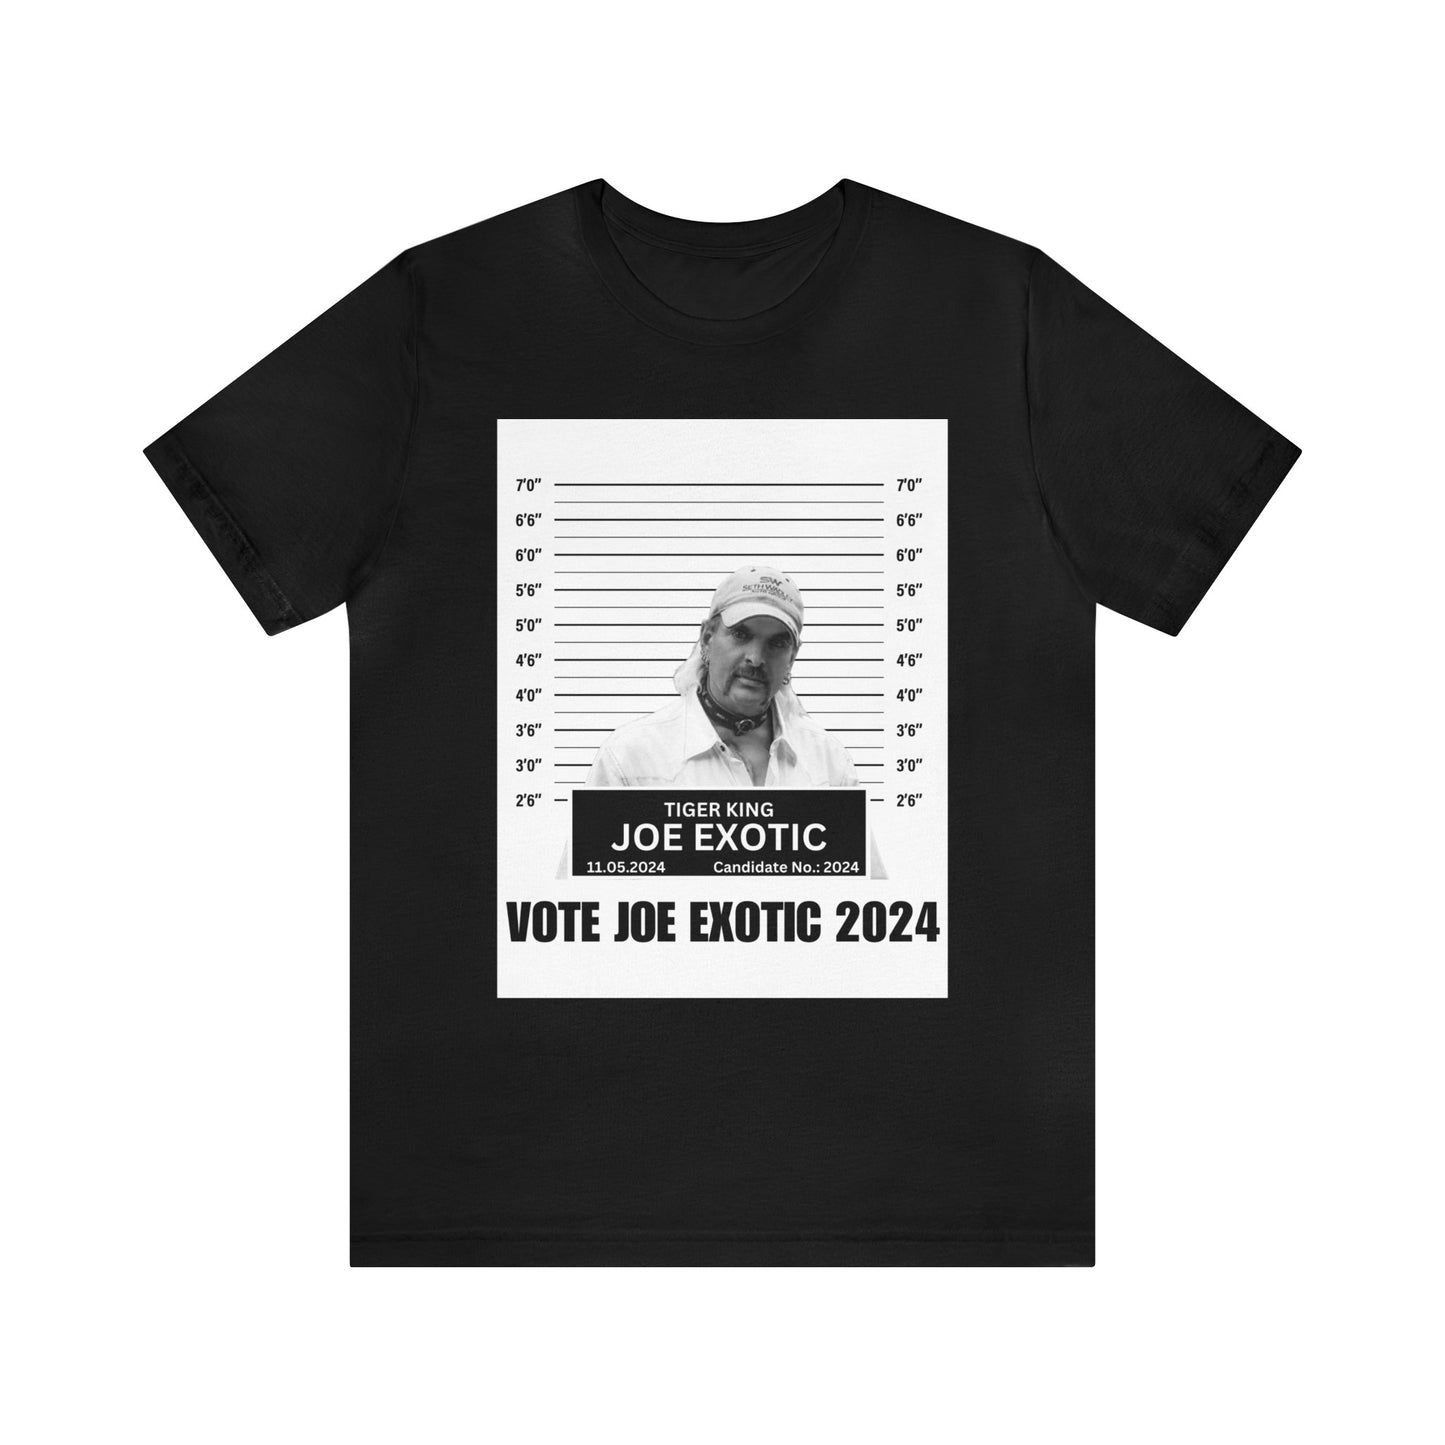 Vote Joe Exotic 2024 Tee